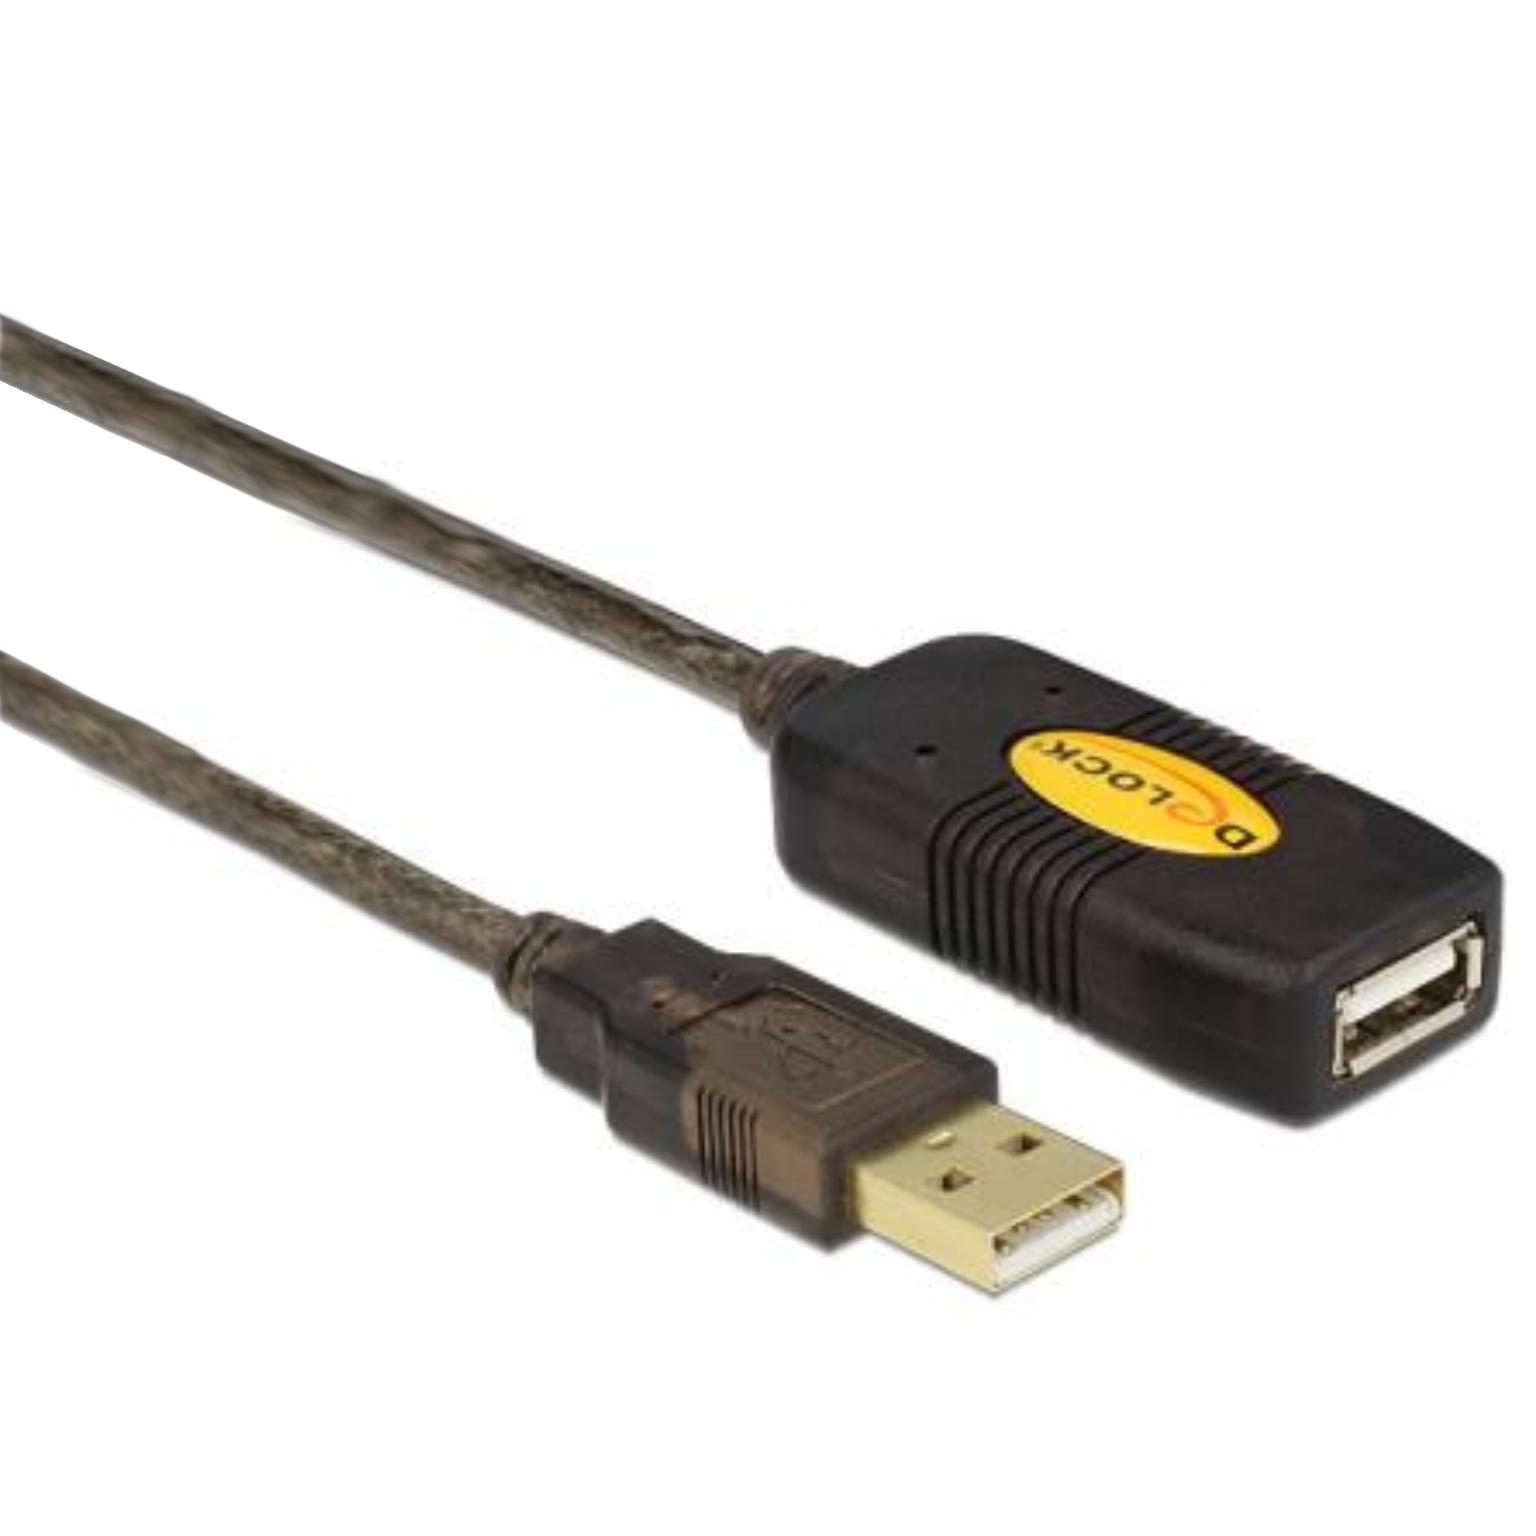 boerderij verlies uzelf is meer dan USB 2.0 Verlengkabel + Versterker - USB 2.0 verlengkabel met versterker,  Connector 1: USB A male, Connector 2: USB A female, 15 meter.